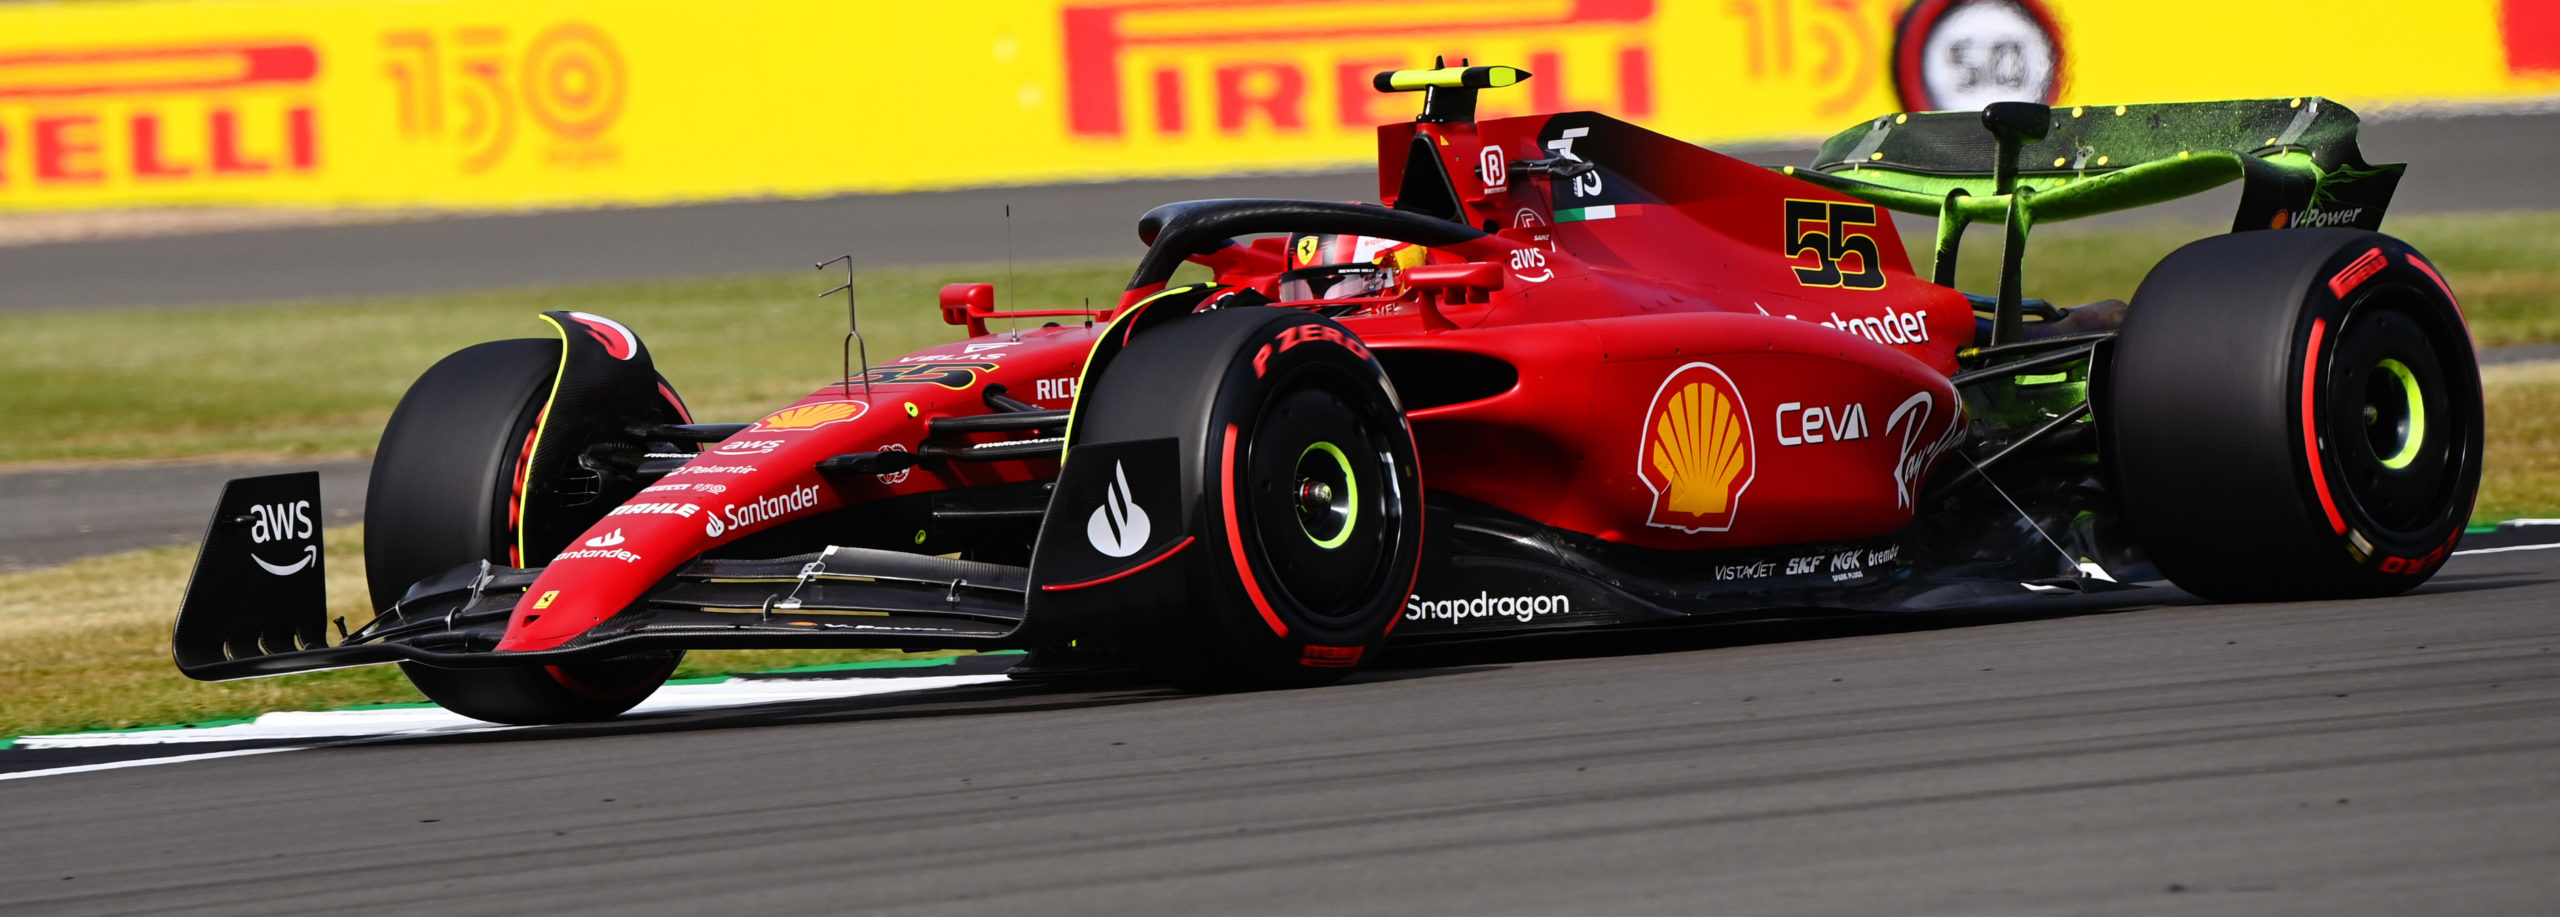 Carlos Sainz reina en Silverstone con su Ferrari